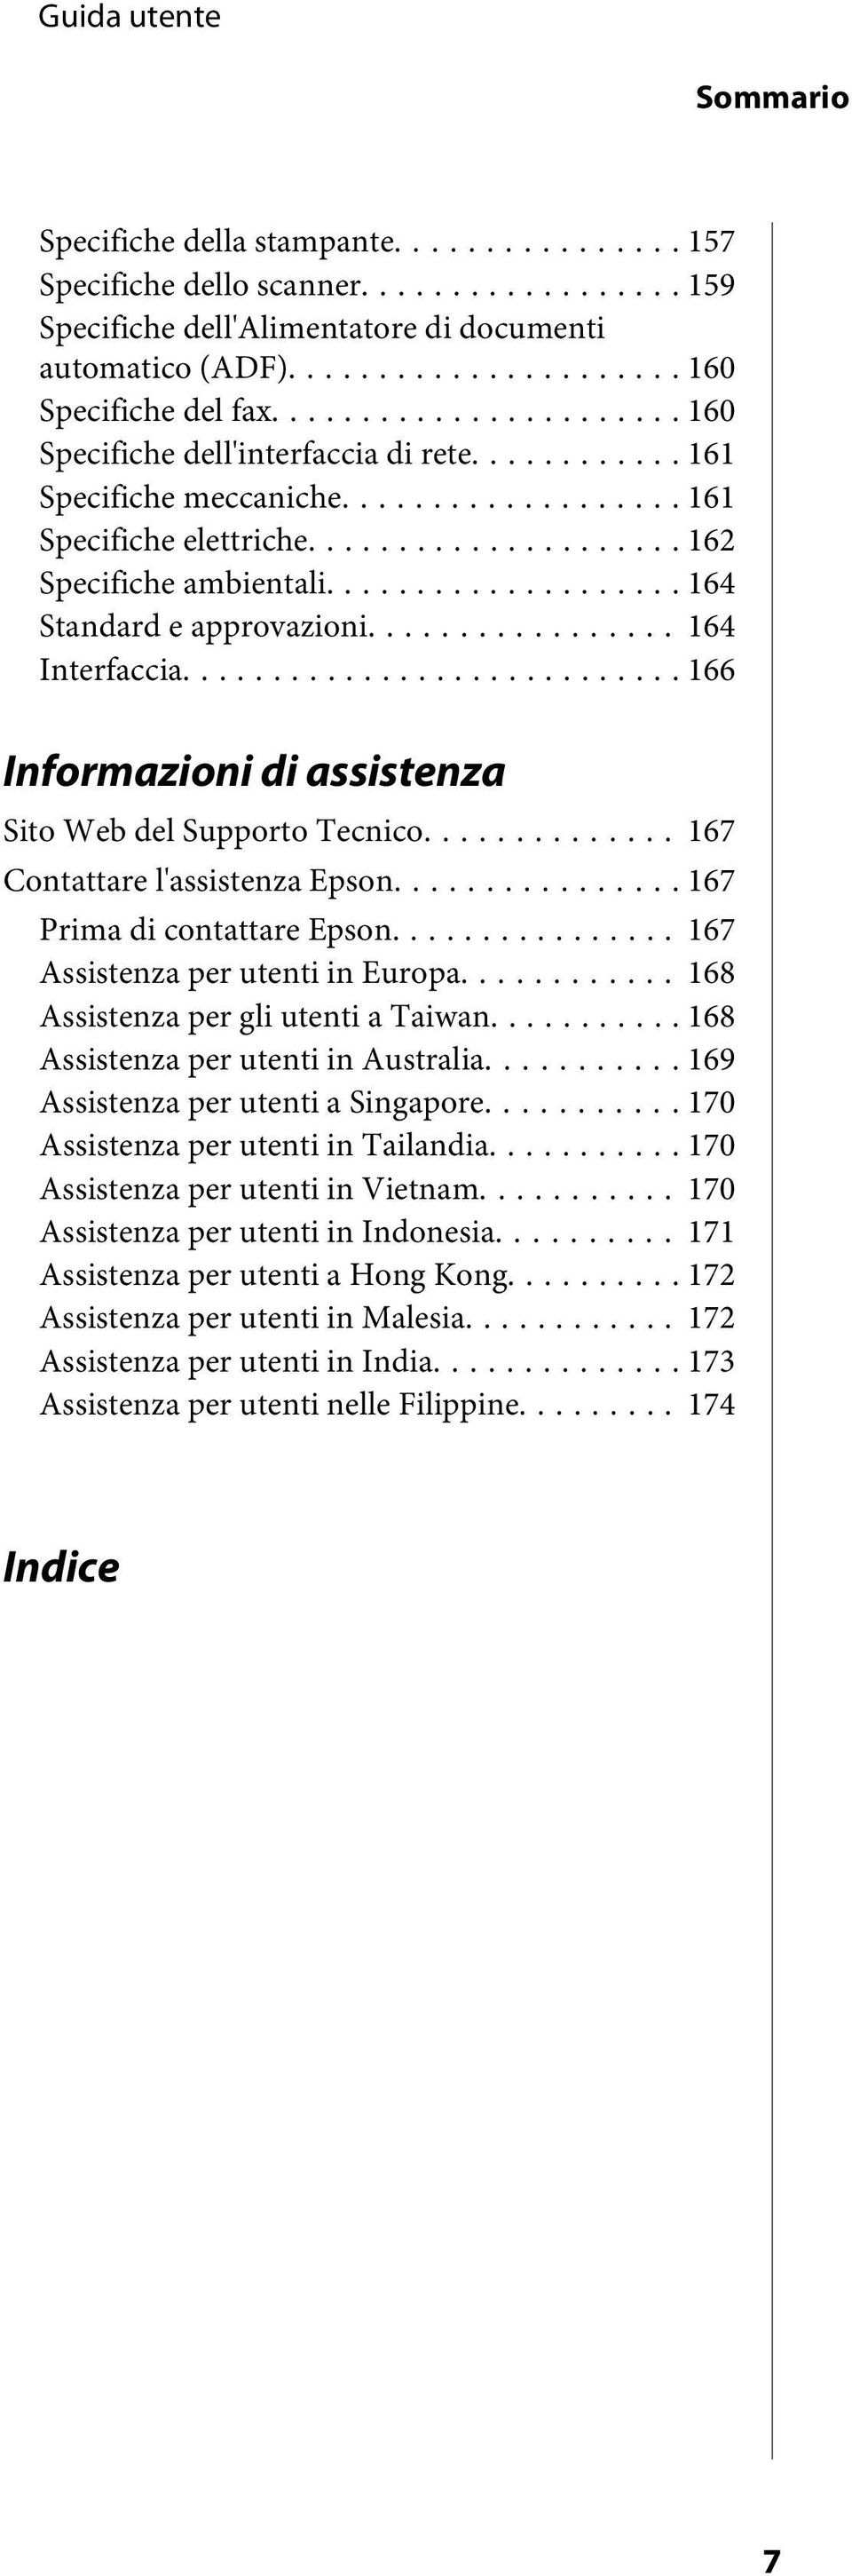 .. 166 Informazioni di assistenza Sito Web del Supporto Tecnico... 167 Contattare l'assistenza Epson... 167 Prima di contattare Epson... 167 Assistenza per utenti in Europa.